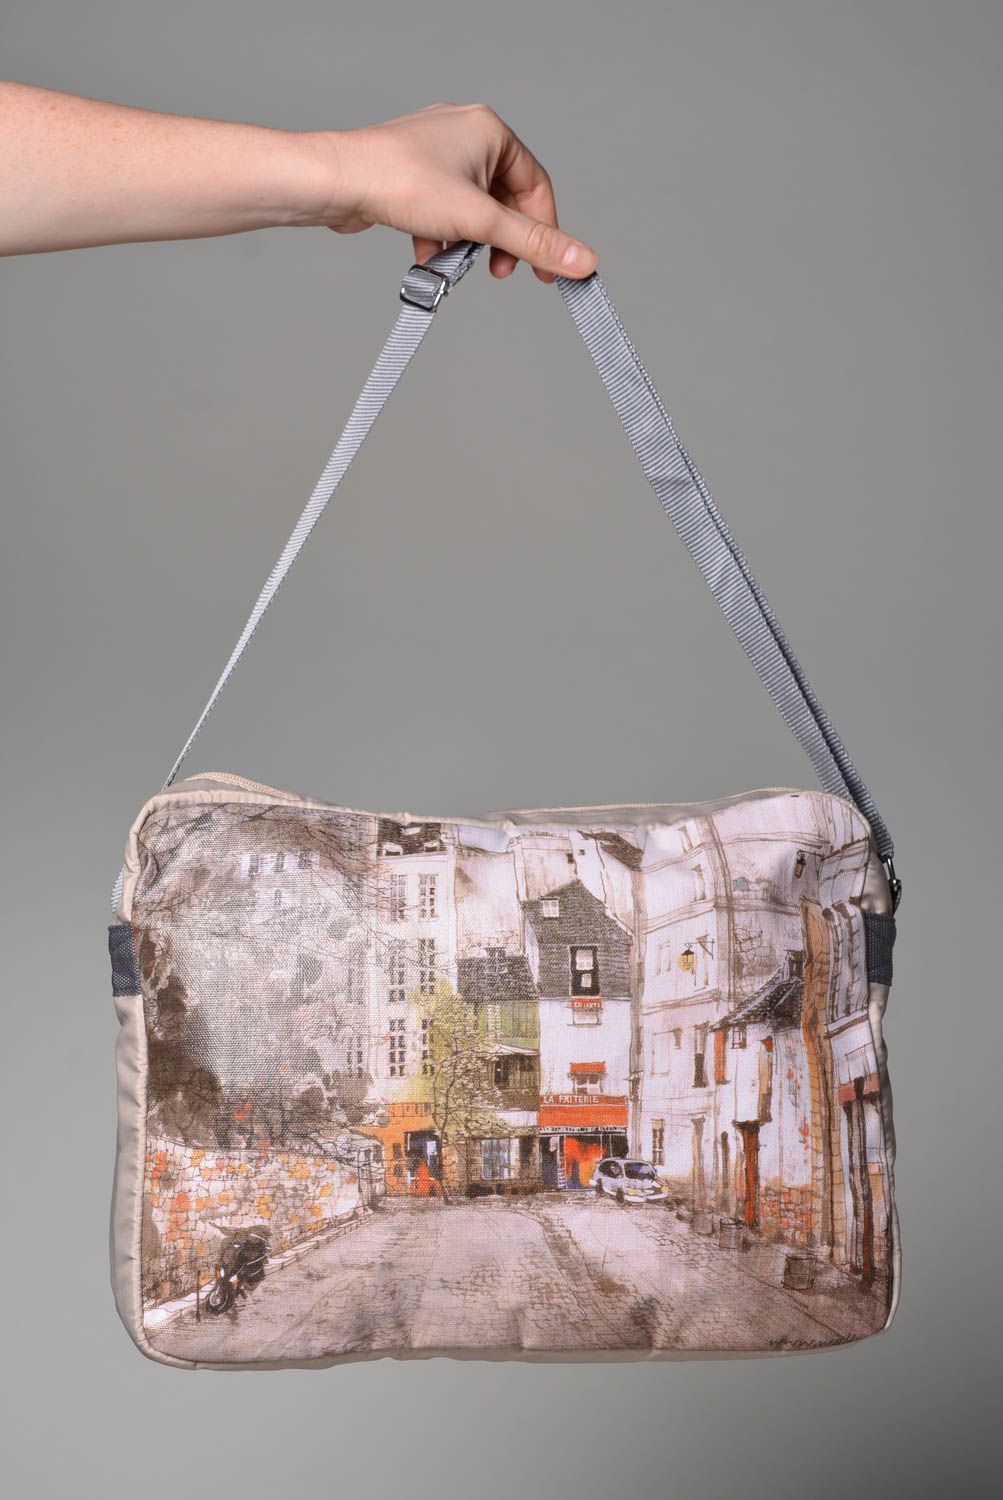 Сумка ручной работы сумка через плечо текстильная сумка с городским пейзажем фото 3